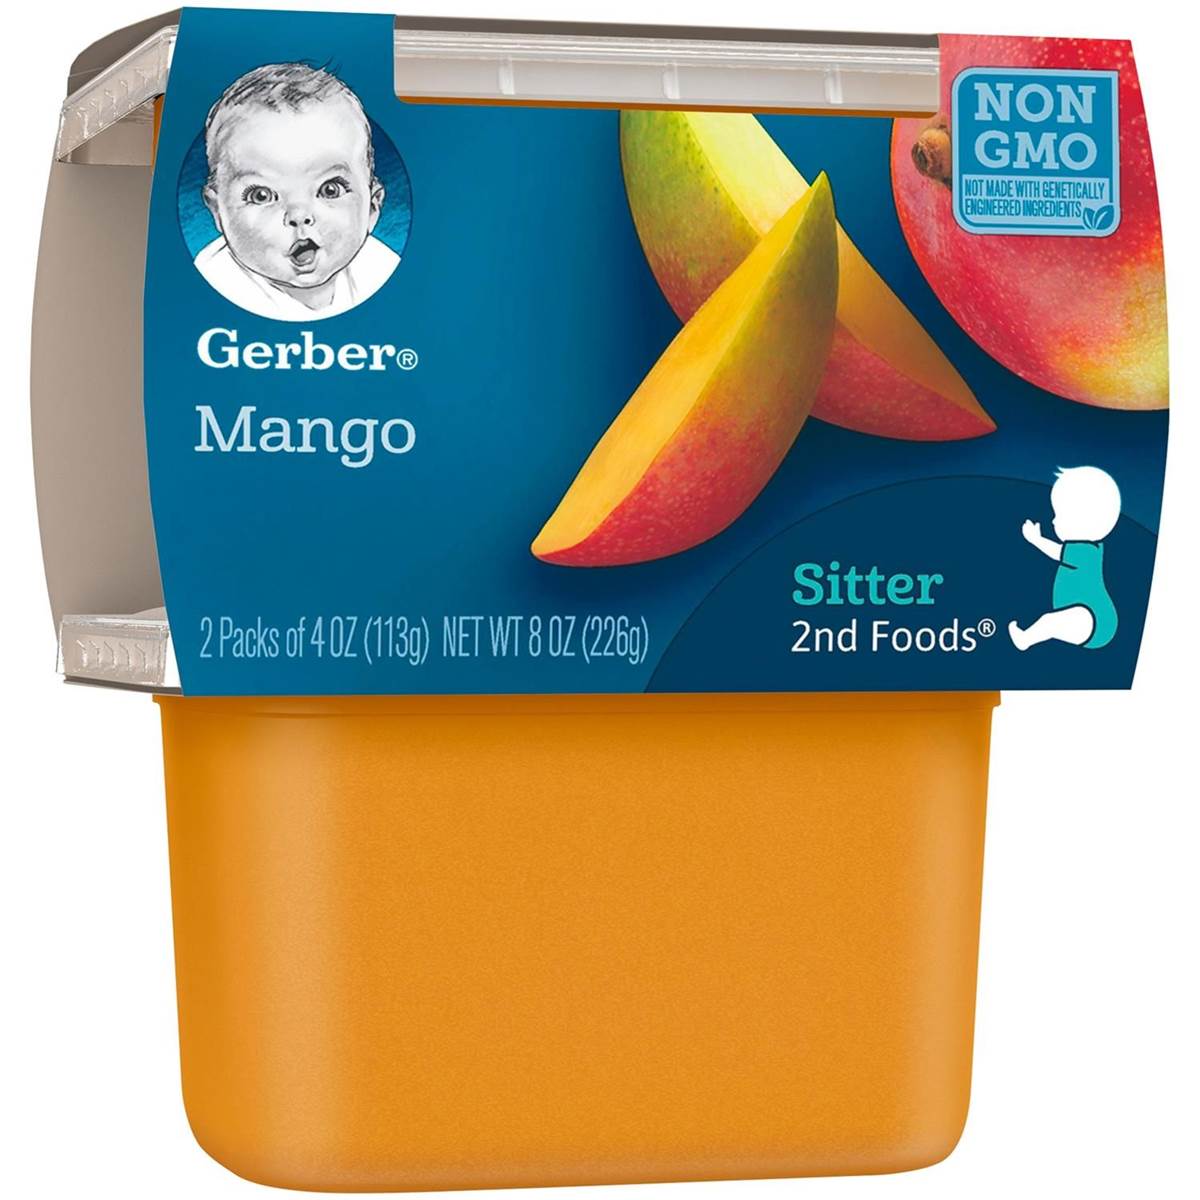 Gerber 2nd Foods for Sitter - Mango